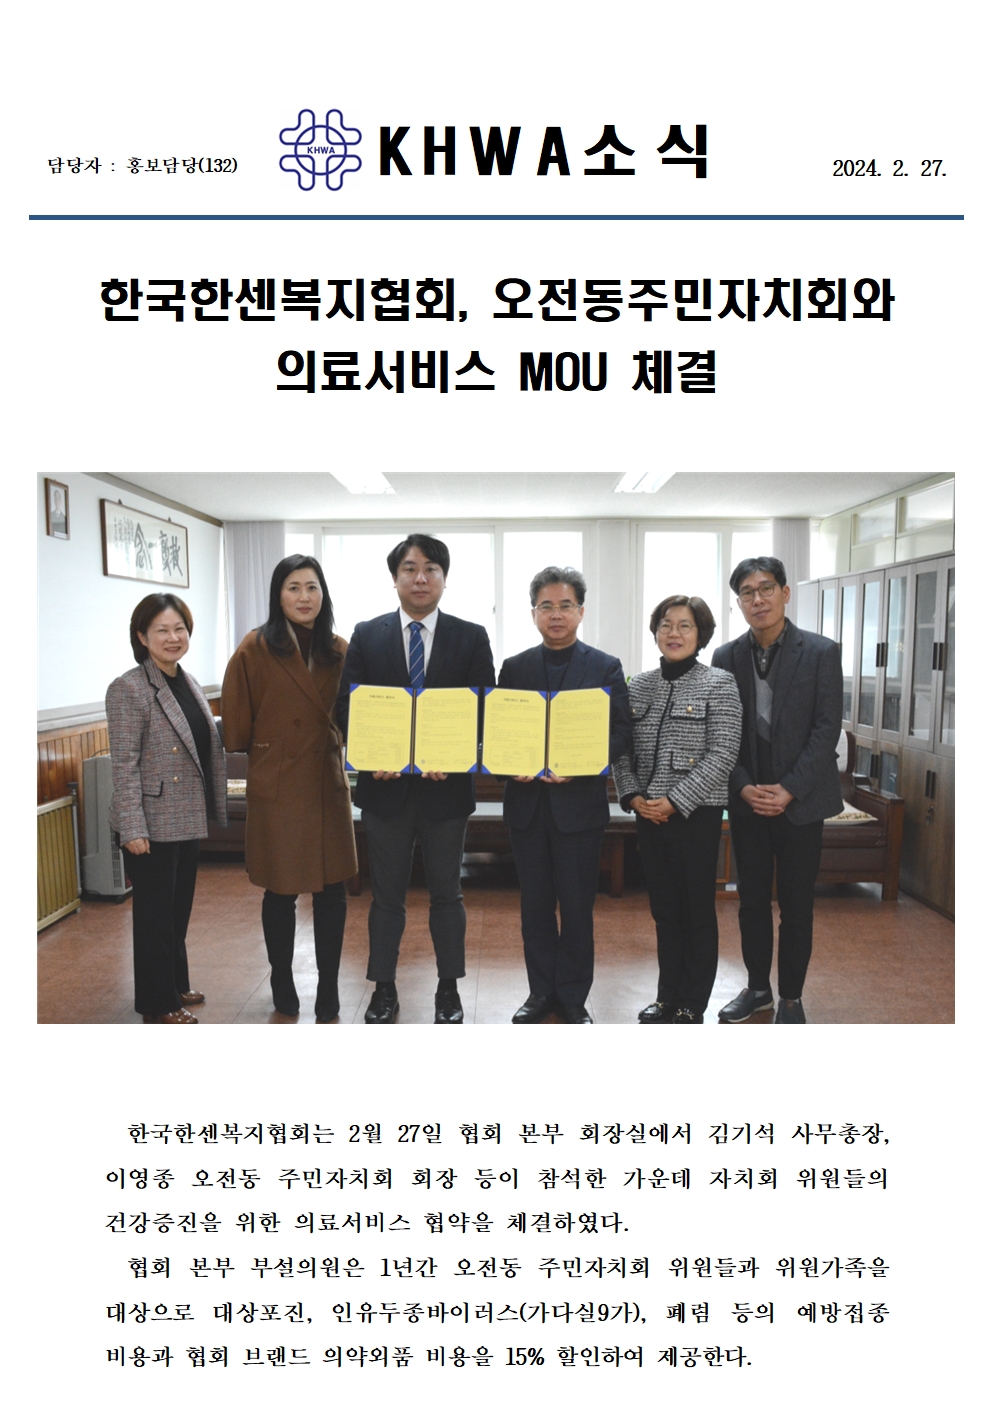 한국한센복지협회, 오전동주민자치회와 의료서비스 MOU 체결